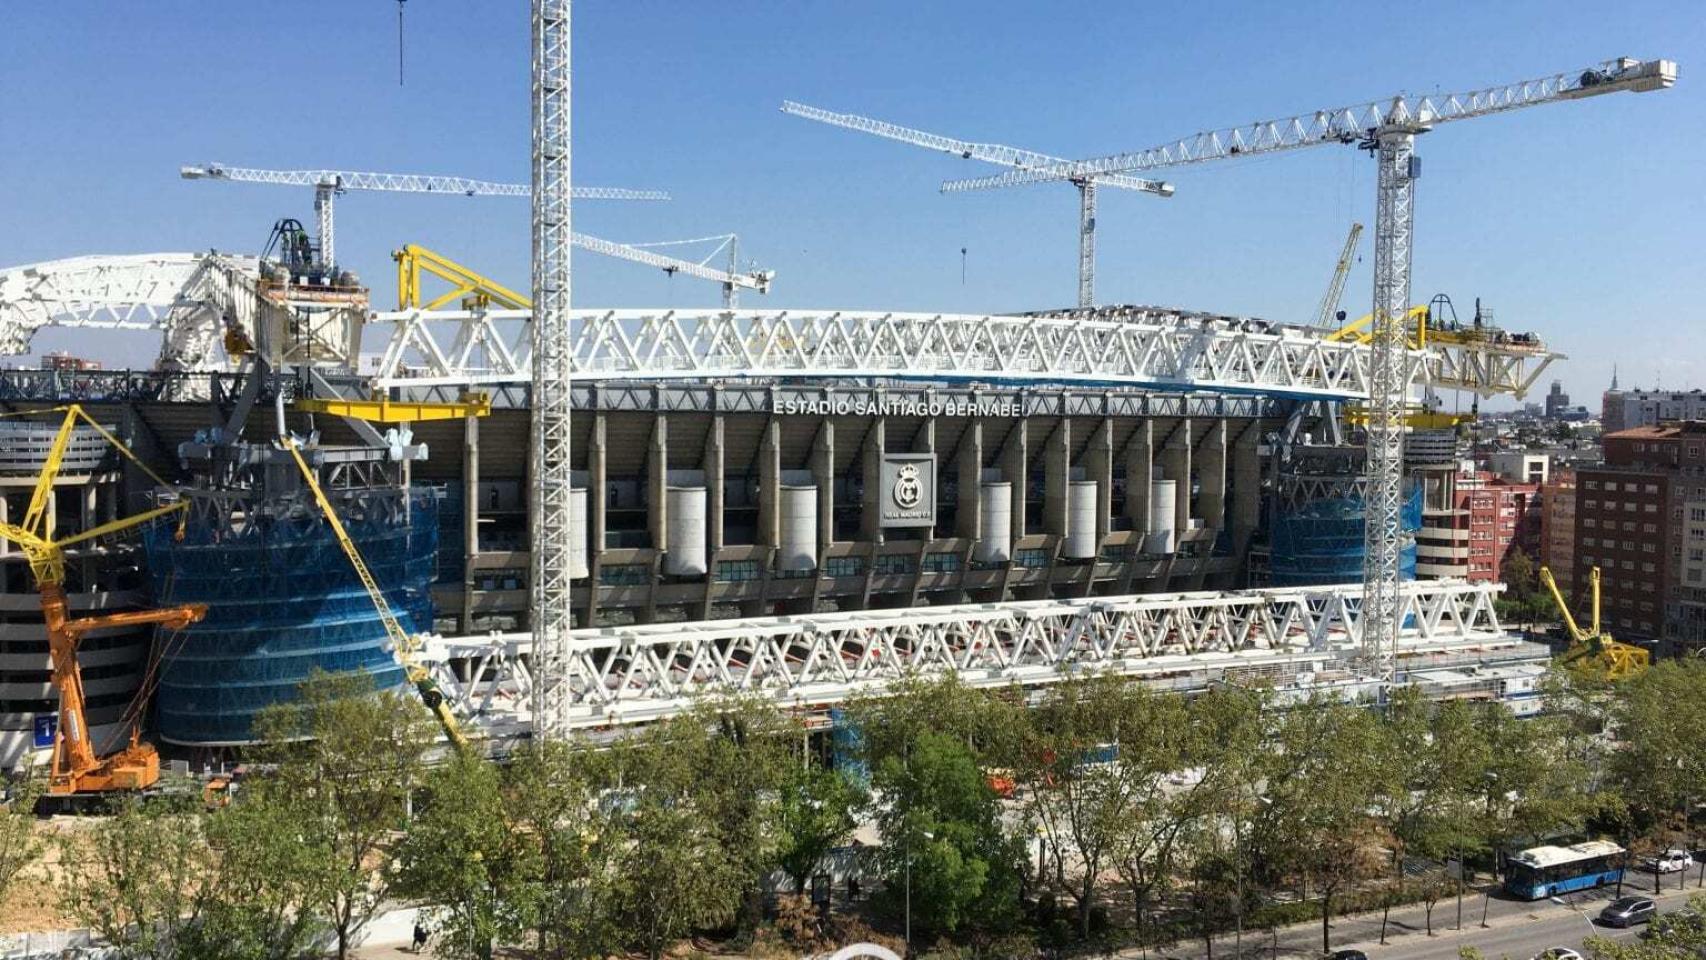 La capacidad del Santiago Bernabéu tras las obras, al descubierto